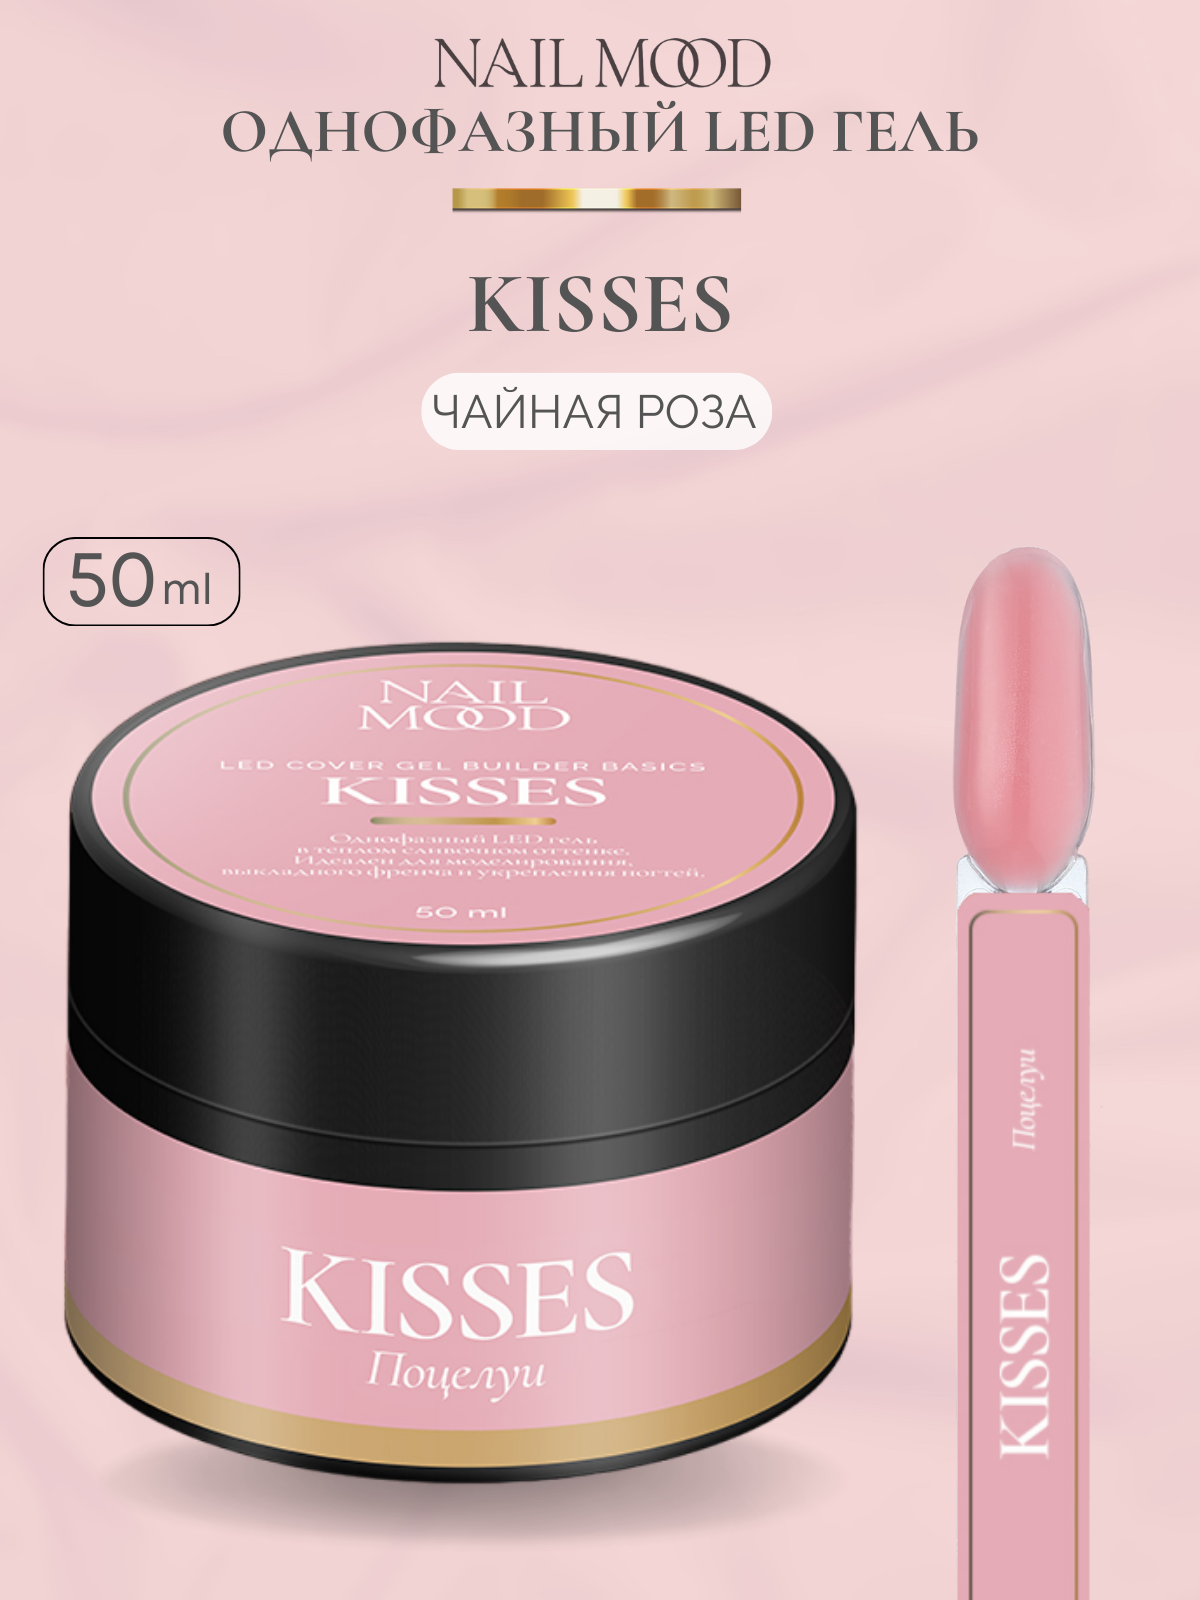 Гель для моделирования Nail Mood Поцелуи Kisses 50 г скребок для языка dentalpik tongue cleaner 2 шт розовый и зеленый